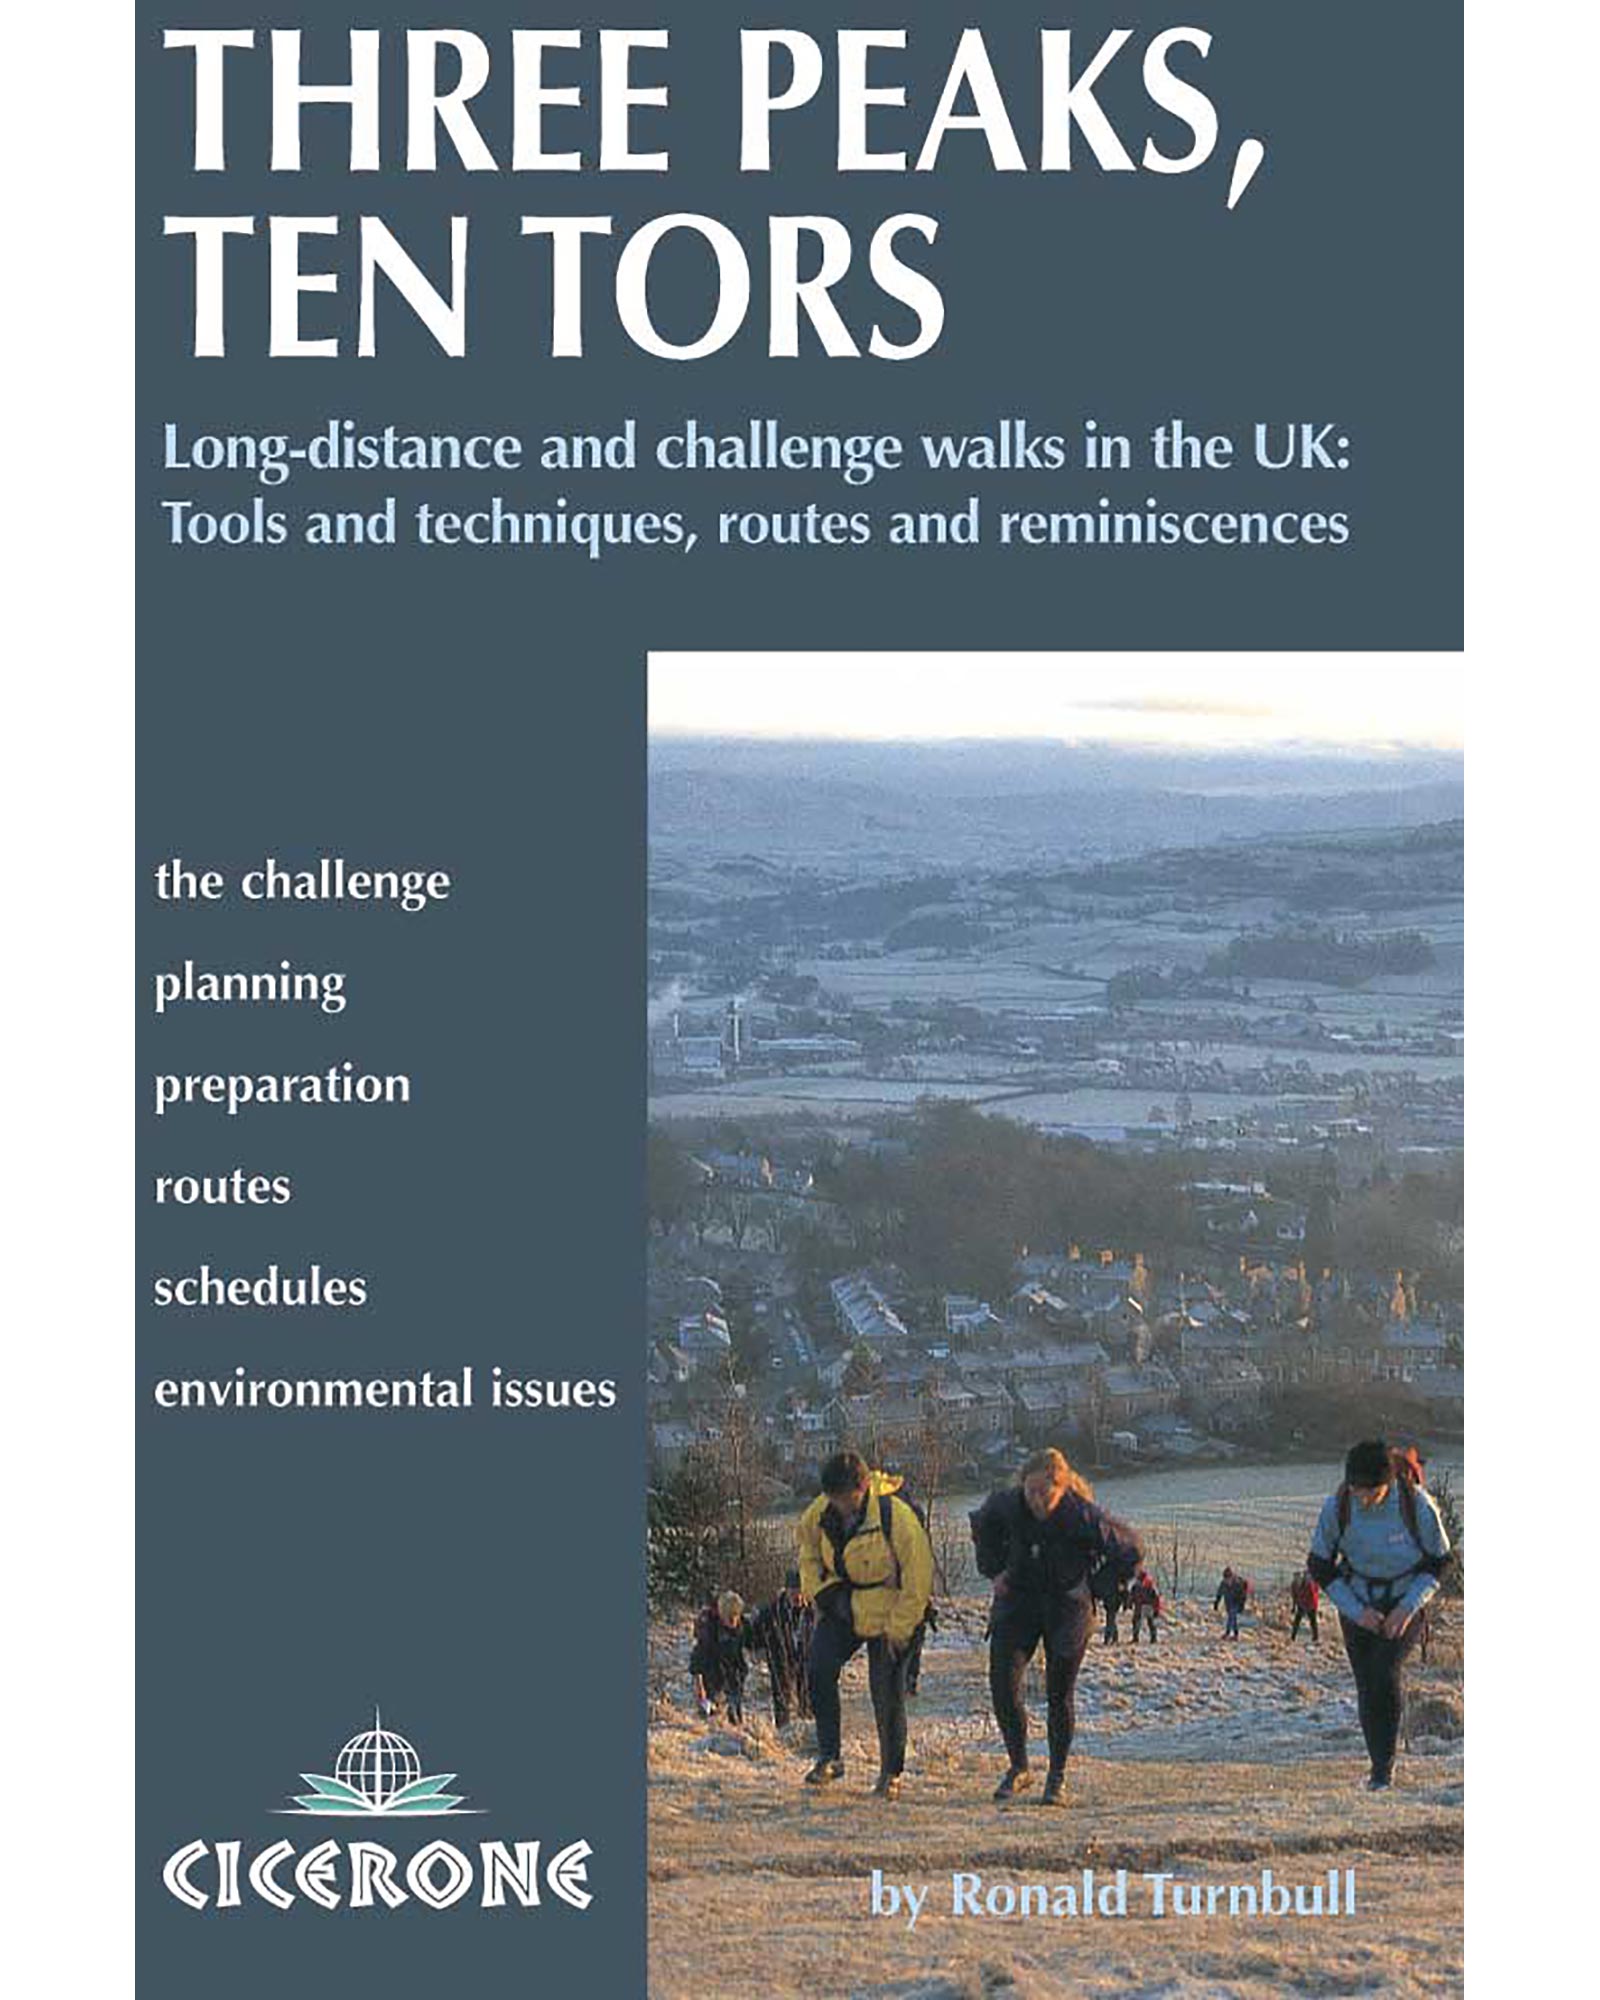 Cicerone Three Peaks, Ten Tors Guide Book